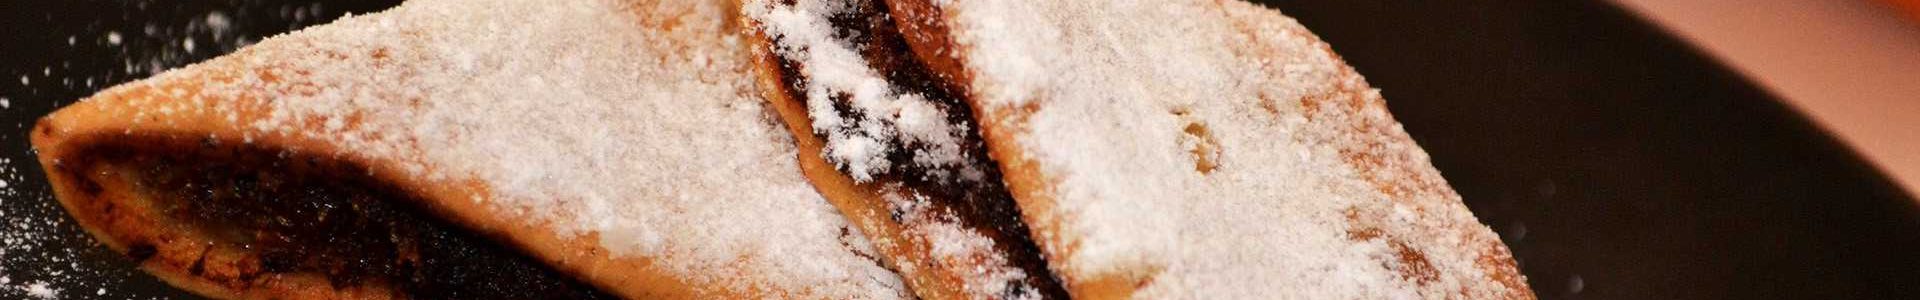 Печенье с финиками имкарет  — традиционный мальтийский десерт